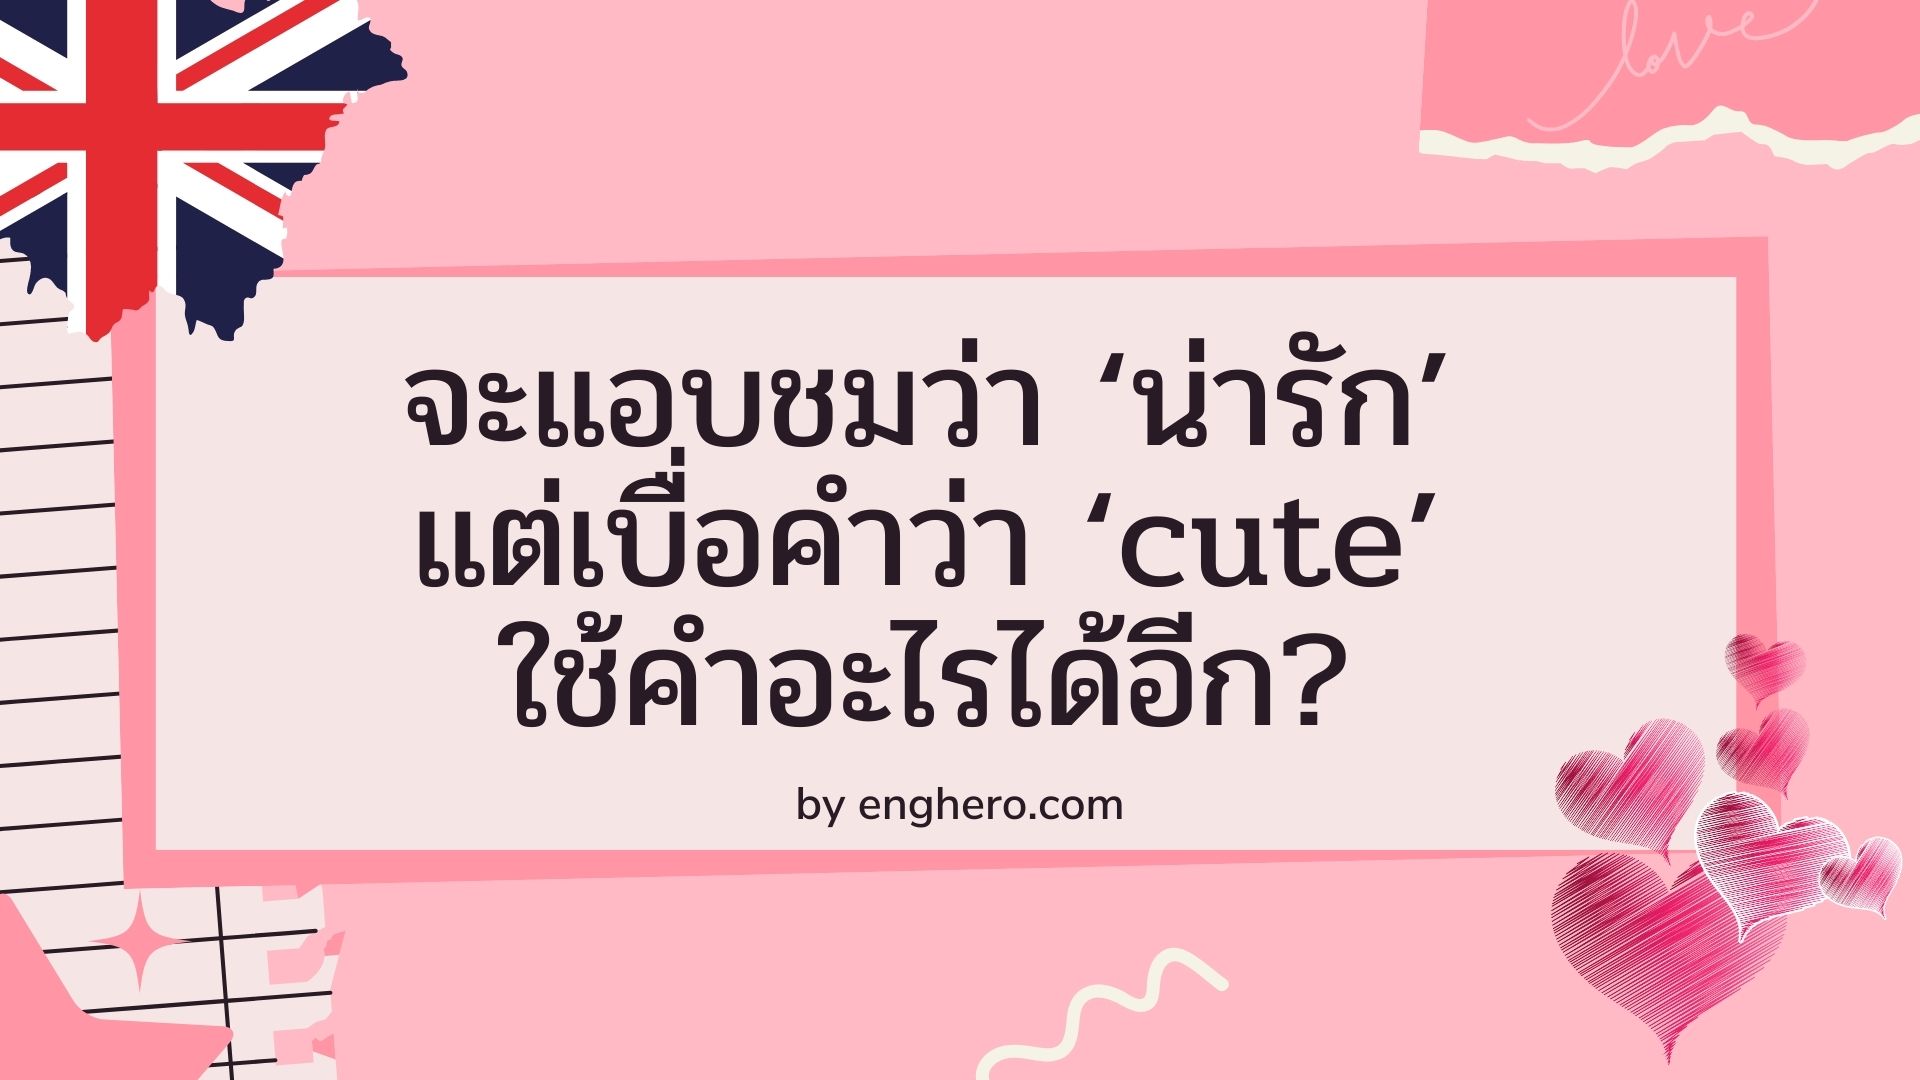 จะแอบชมว่า ‘น่ารัก’ แต่เบื่อคำว่า ‘cute’ ใช้คำอะไรได้อีก?